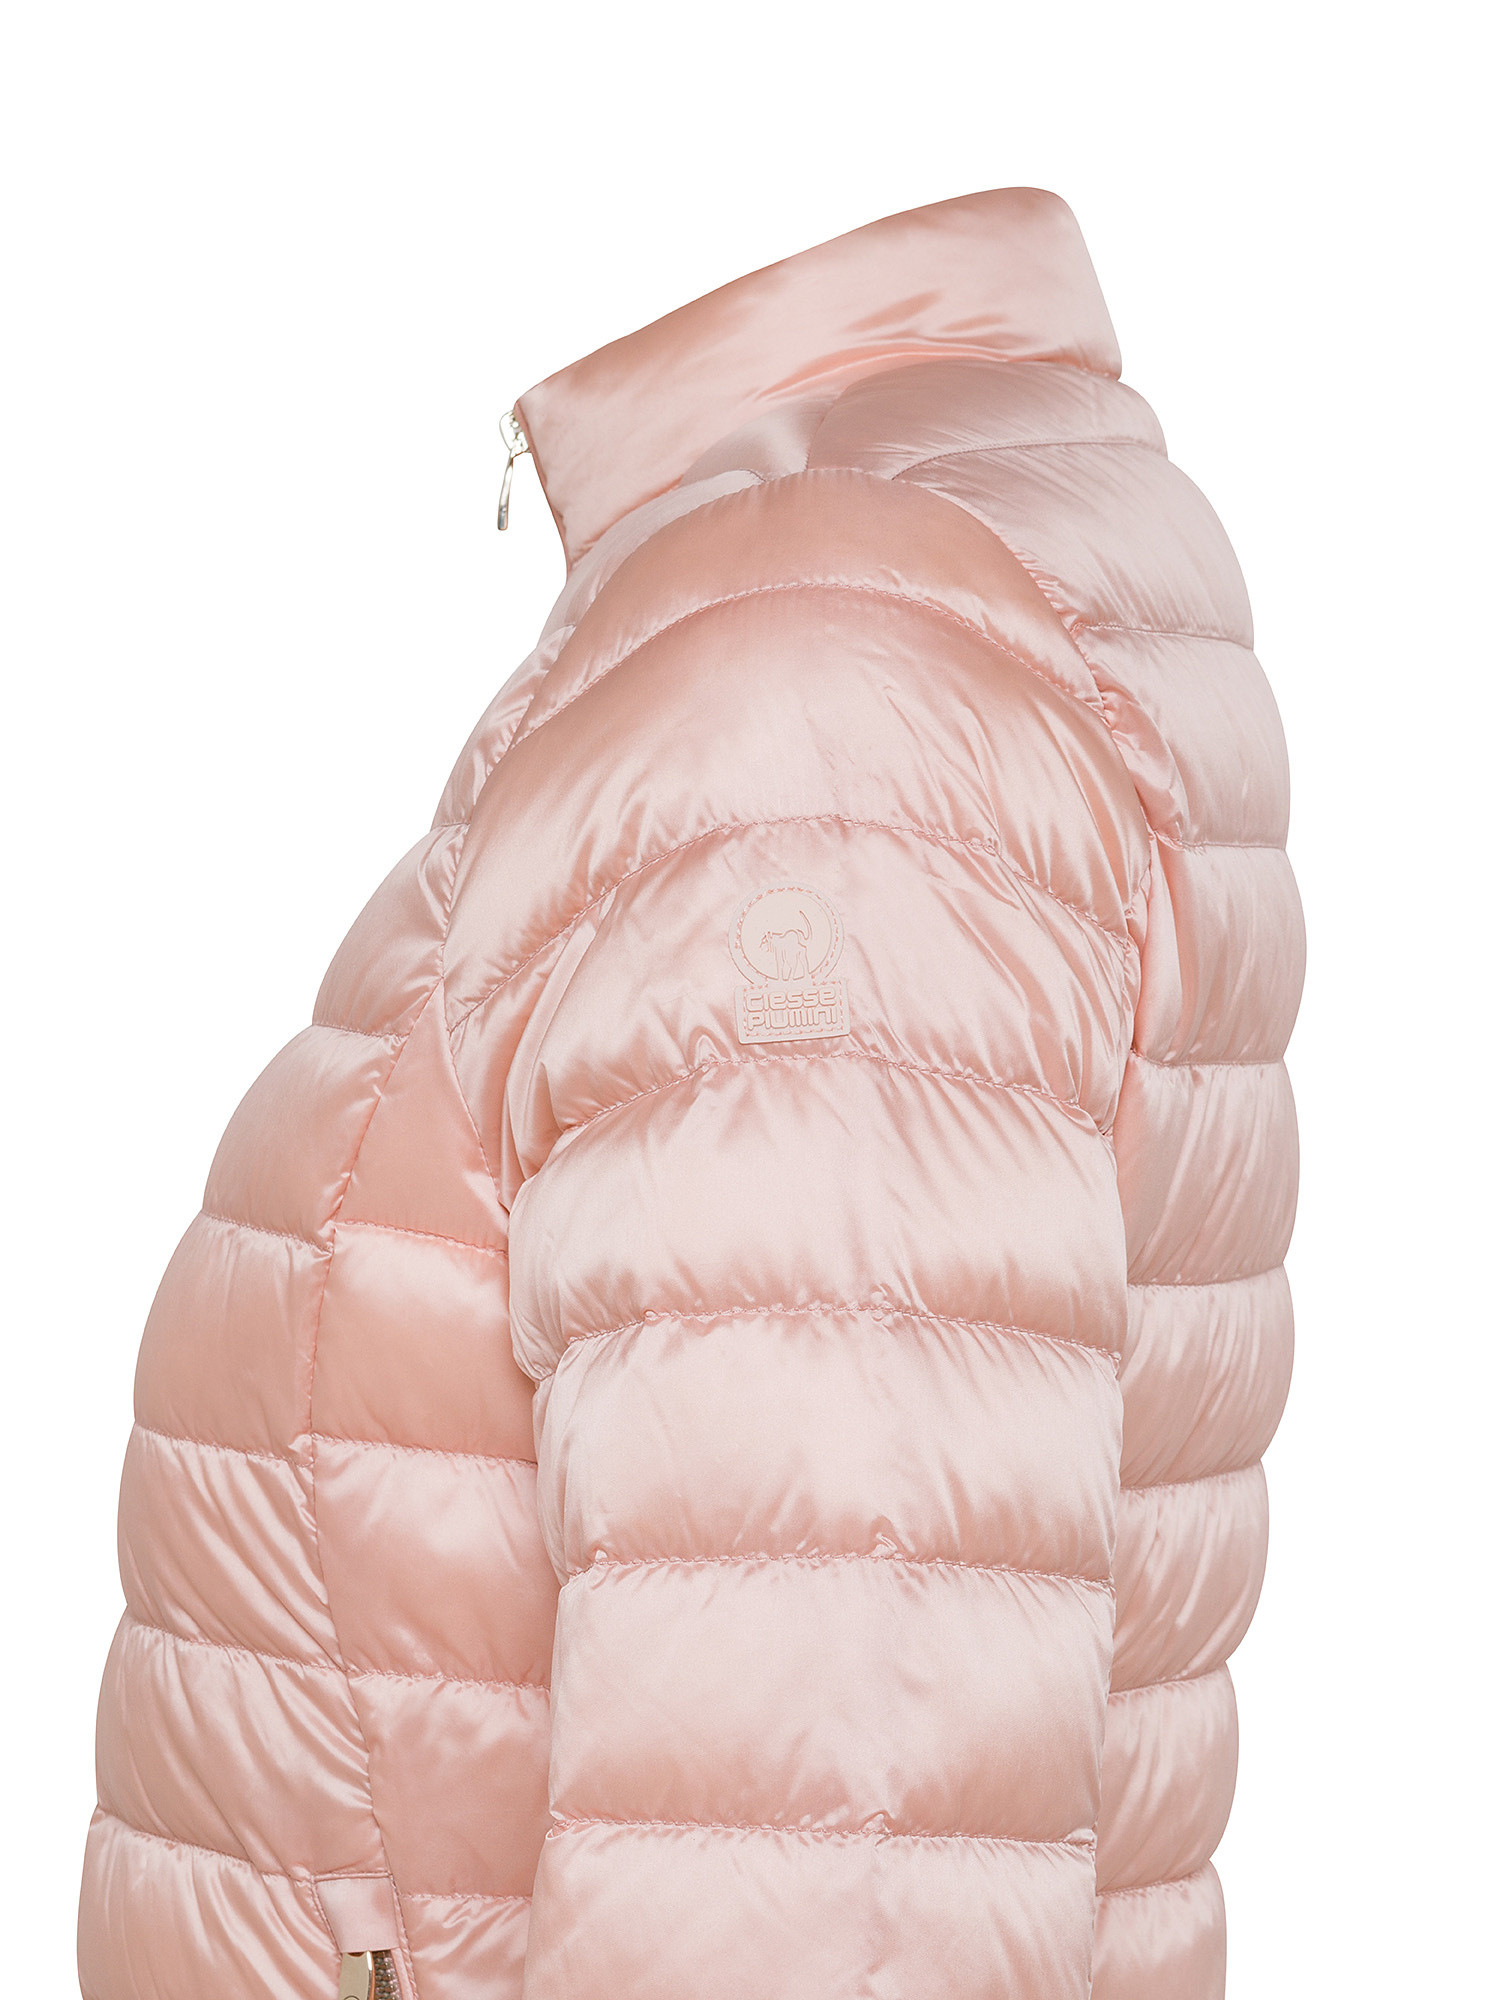 Ciesse Piumini - Pola Long down jacket, Powder Pink, large image number 2